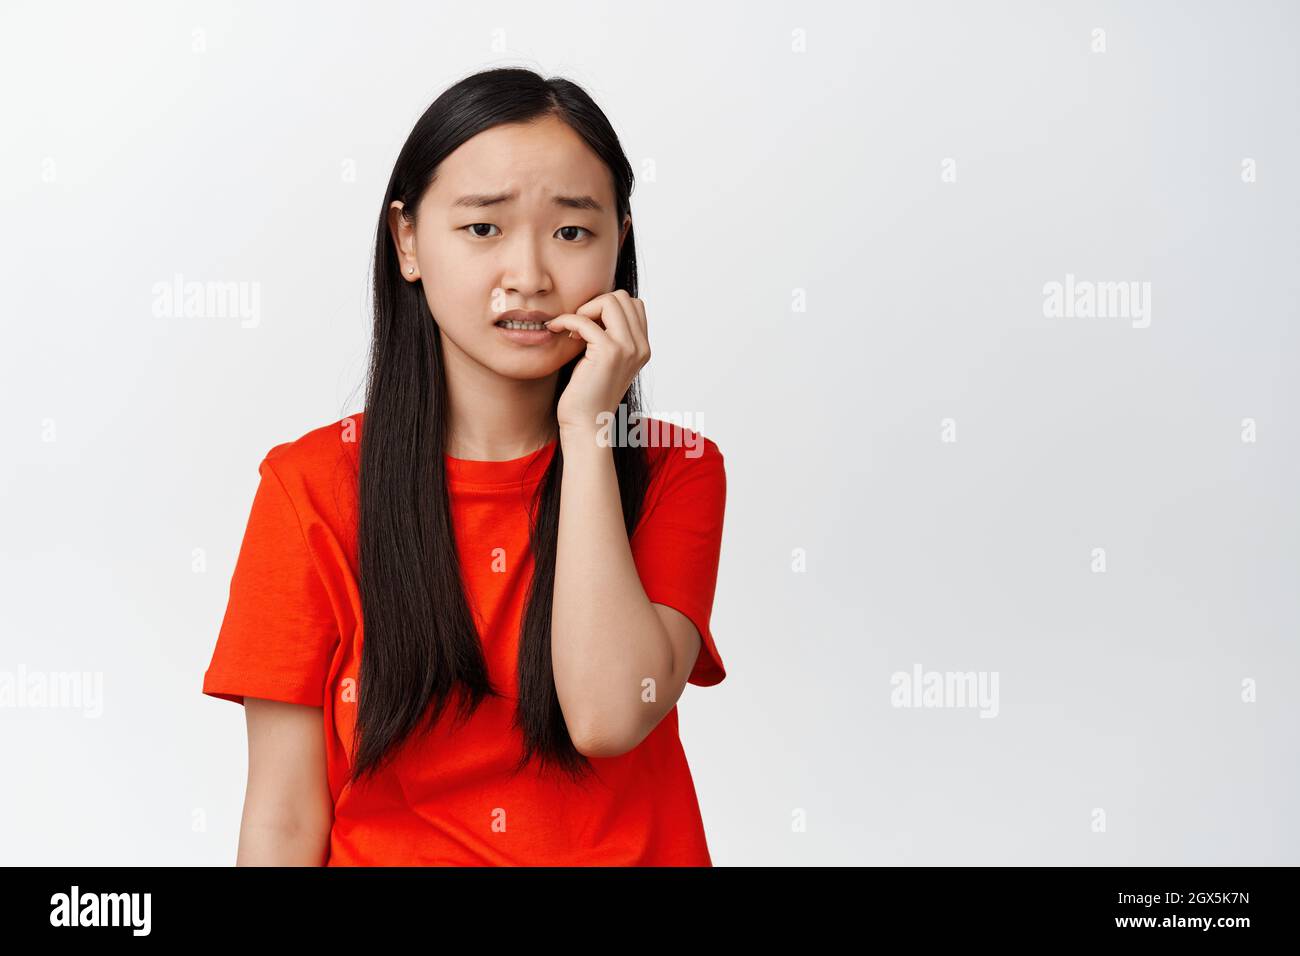 Spaventato ragazza asiatica che morde le dita e guarda la macchina fotografica insicura, ansiosa di qualcosa, si sente preoccupato, in piedi su sfondo bianco Foto Stock